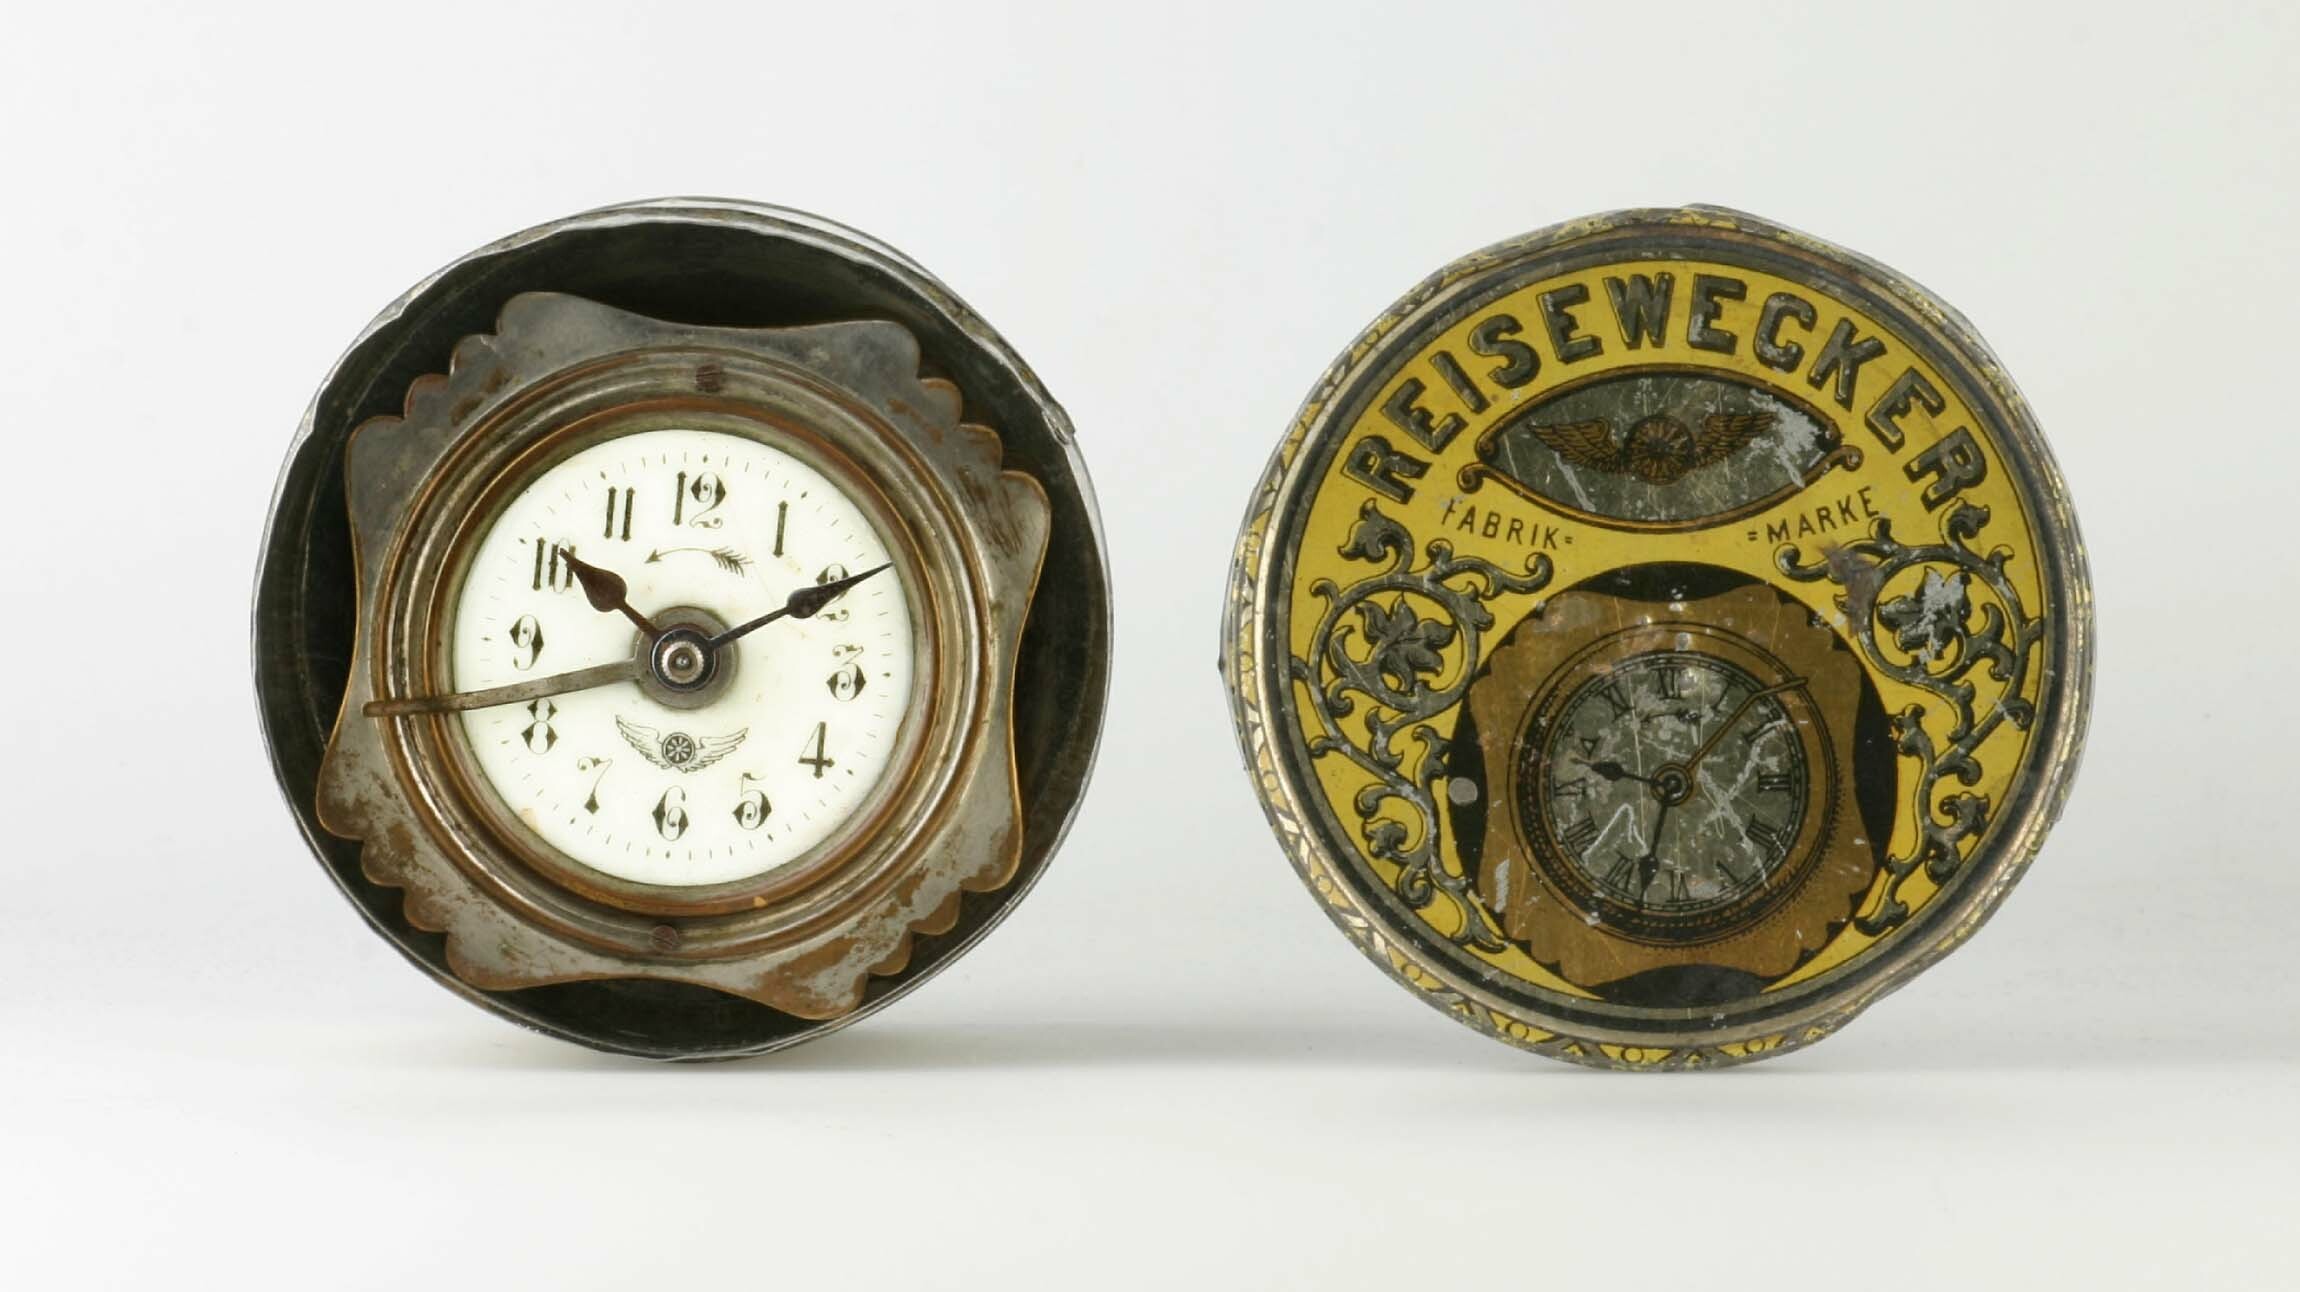 Reisewecker, Schlenker und Kienzle, Schwenningen, um 1900 (Deutsches Uhrenmuseum CC BY-SA)